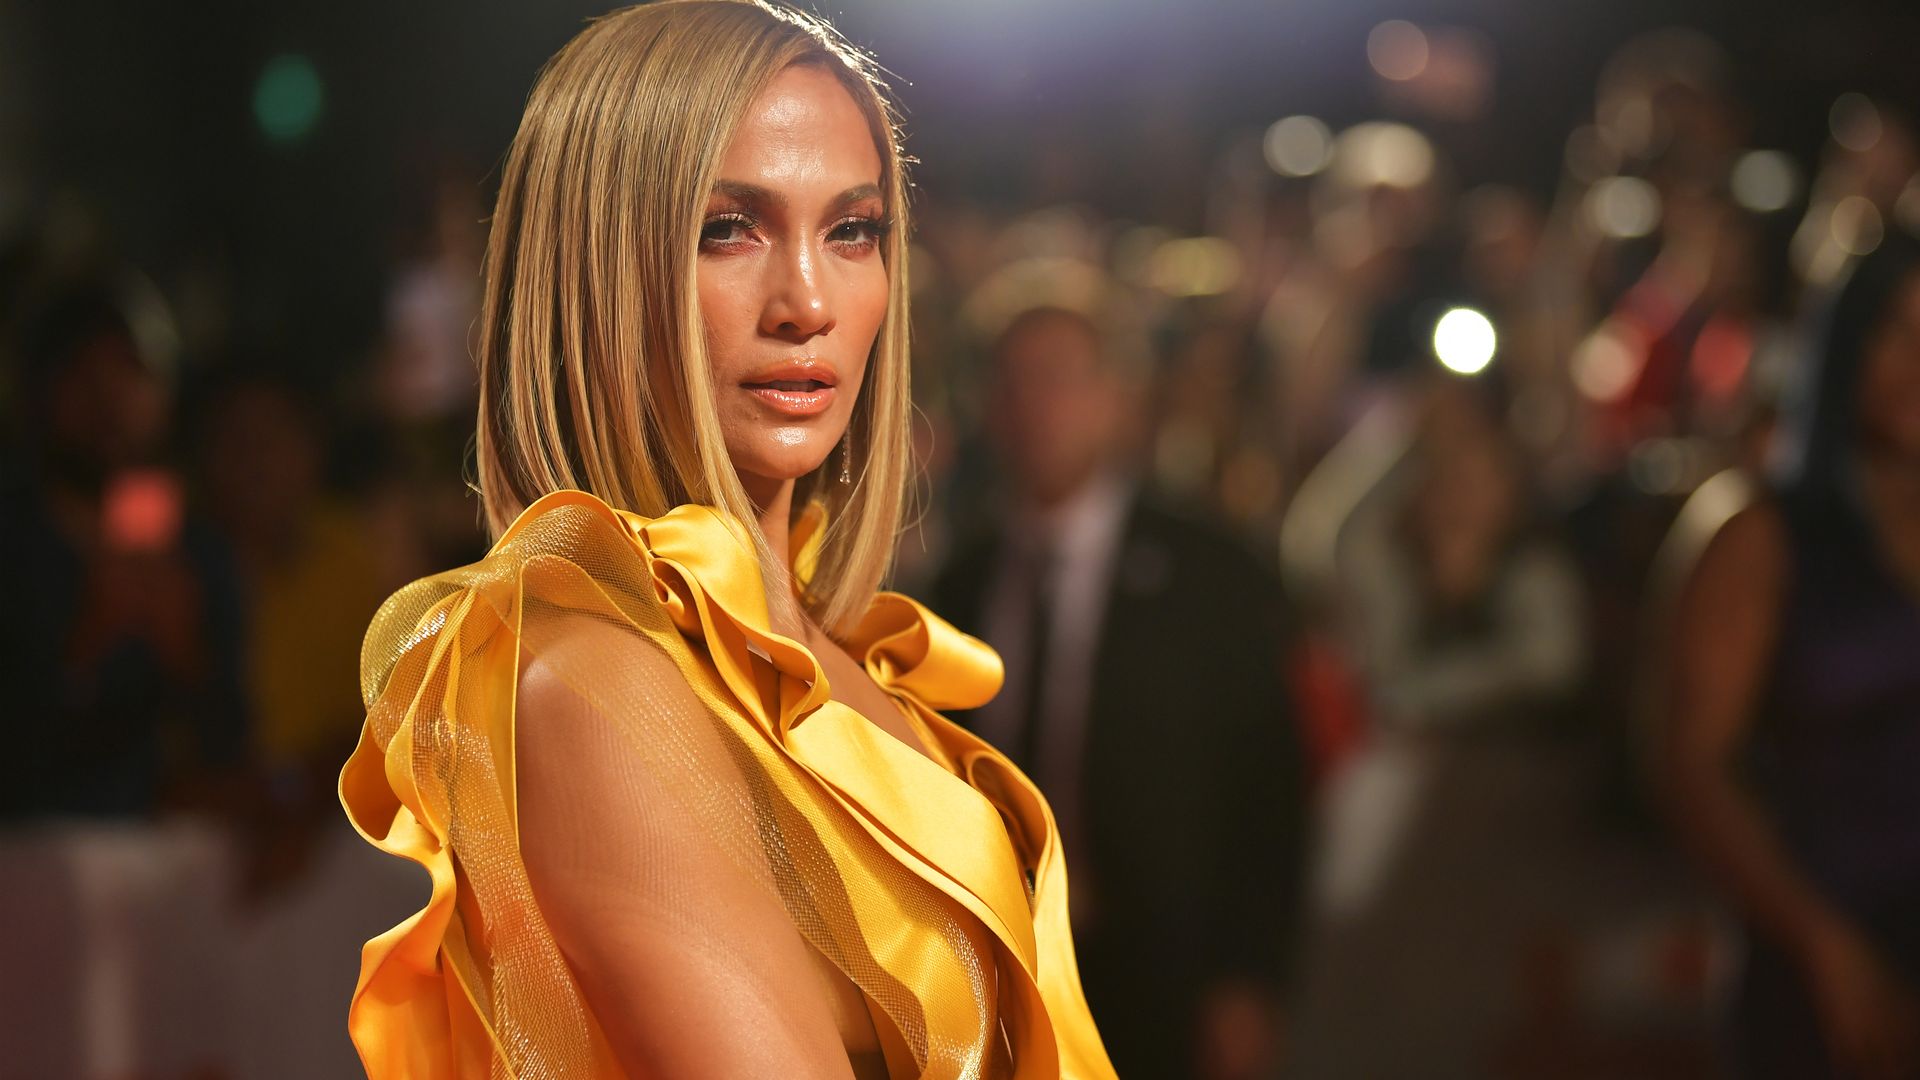 Jennifer Lopez attends the "Hustlers" premiere 